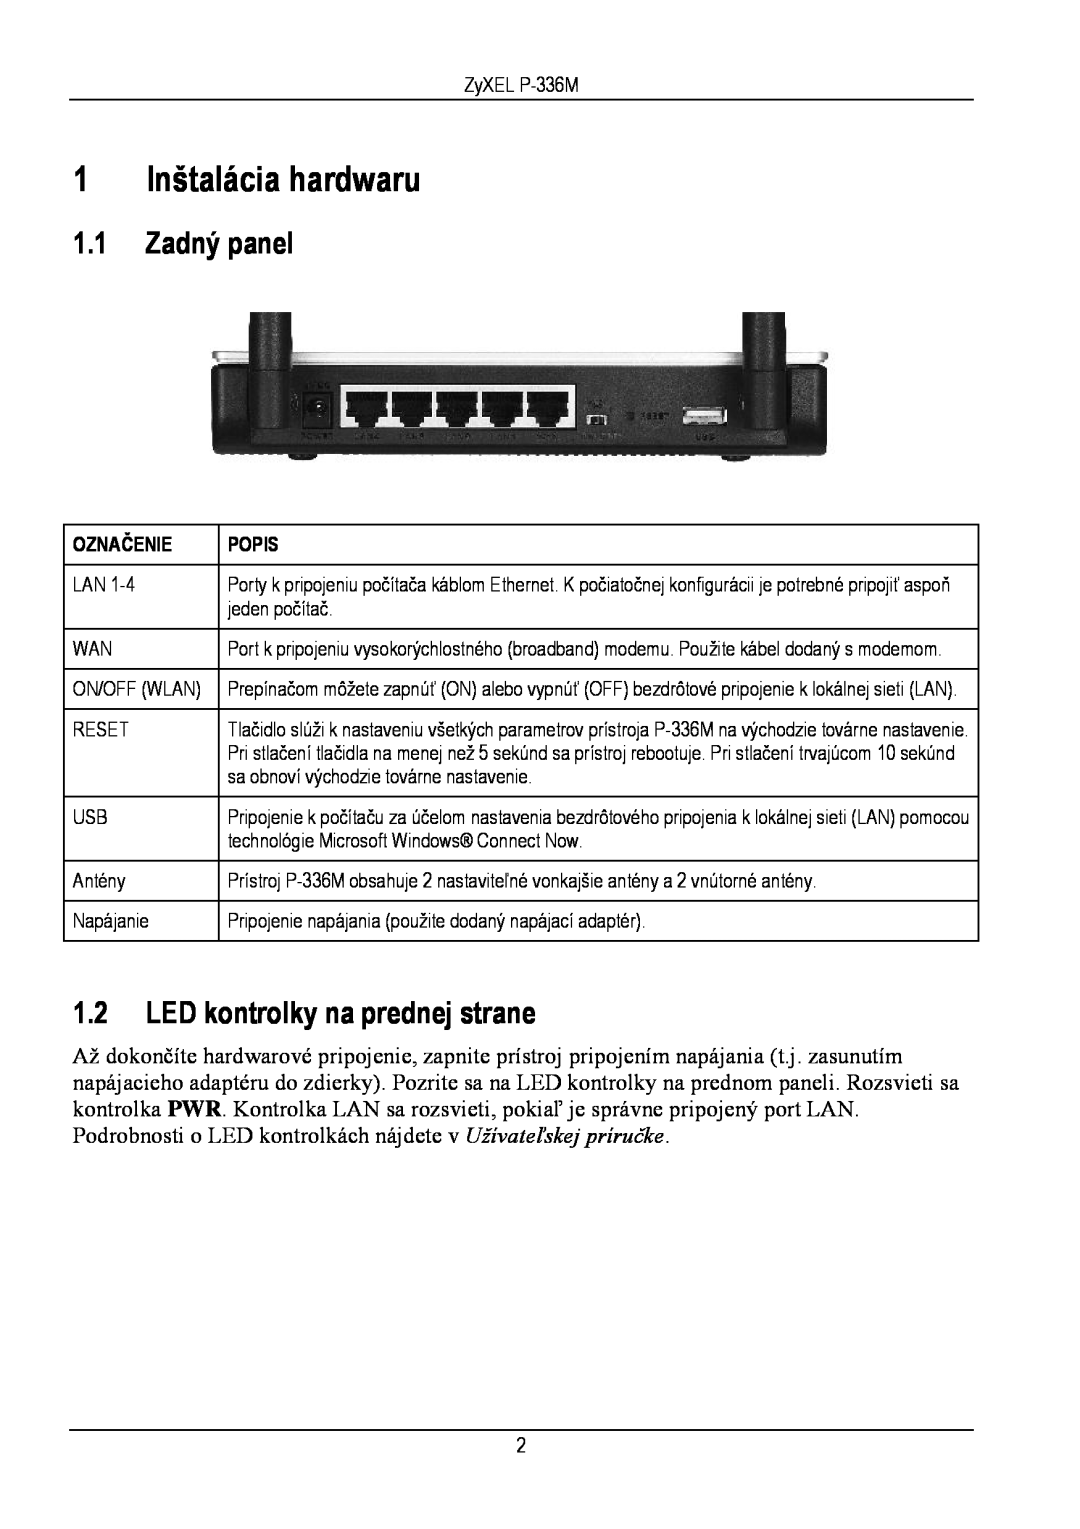 ZyXEL Communications P-336M manual 1 Inštalácia hardwaru, Zadný panel, LED kontrolky na prednej strane, Označenie, Popis 